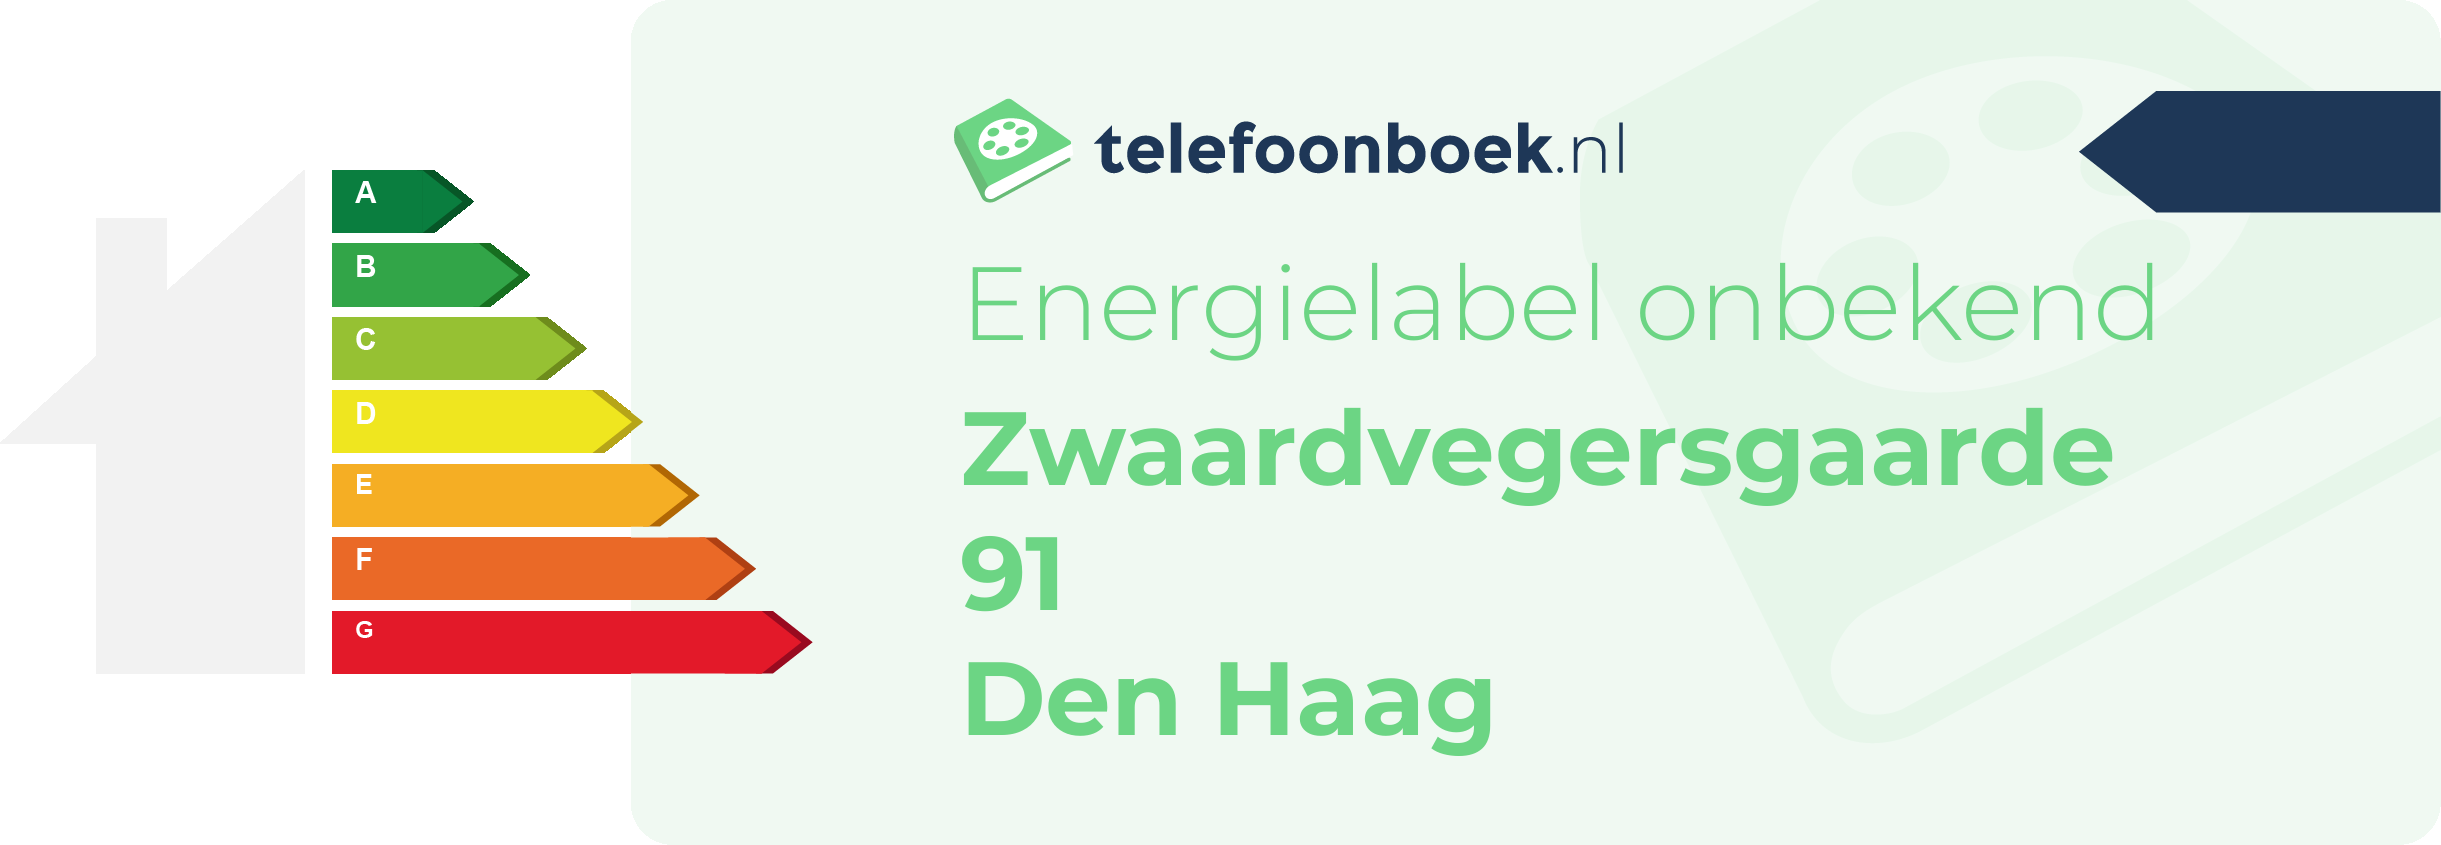 Energielabel Zwaardvegersgaarde 91 Den Haag